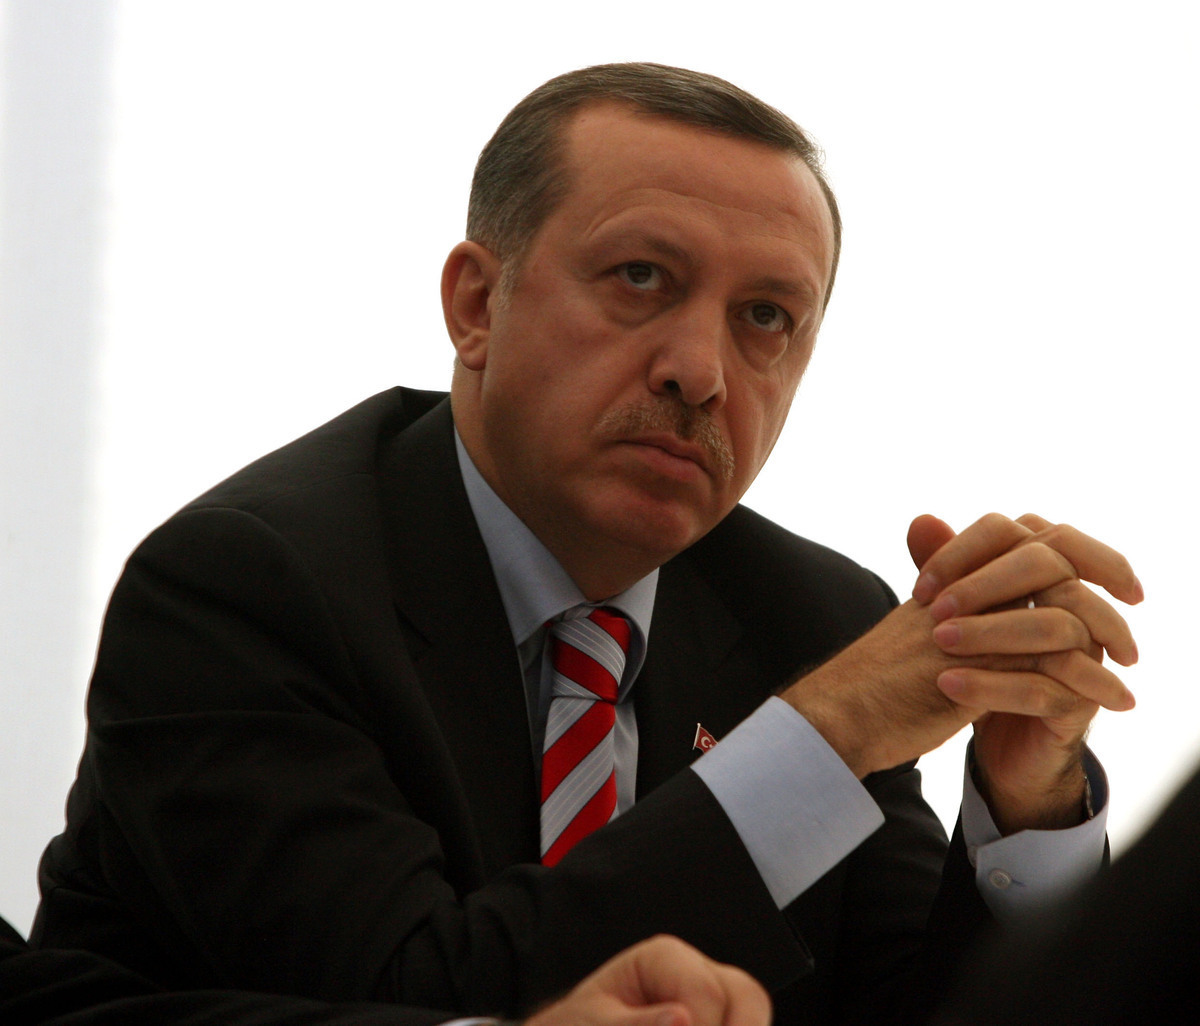 Ο “Σουλτάνος” Ερντογάν θέλει περισσότερες εξουσίες γιατί έτσι γίνεται “στα πλούσια κράτη”